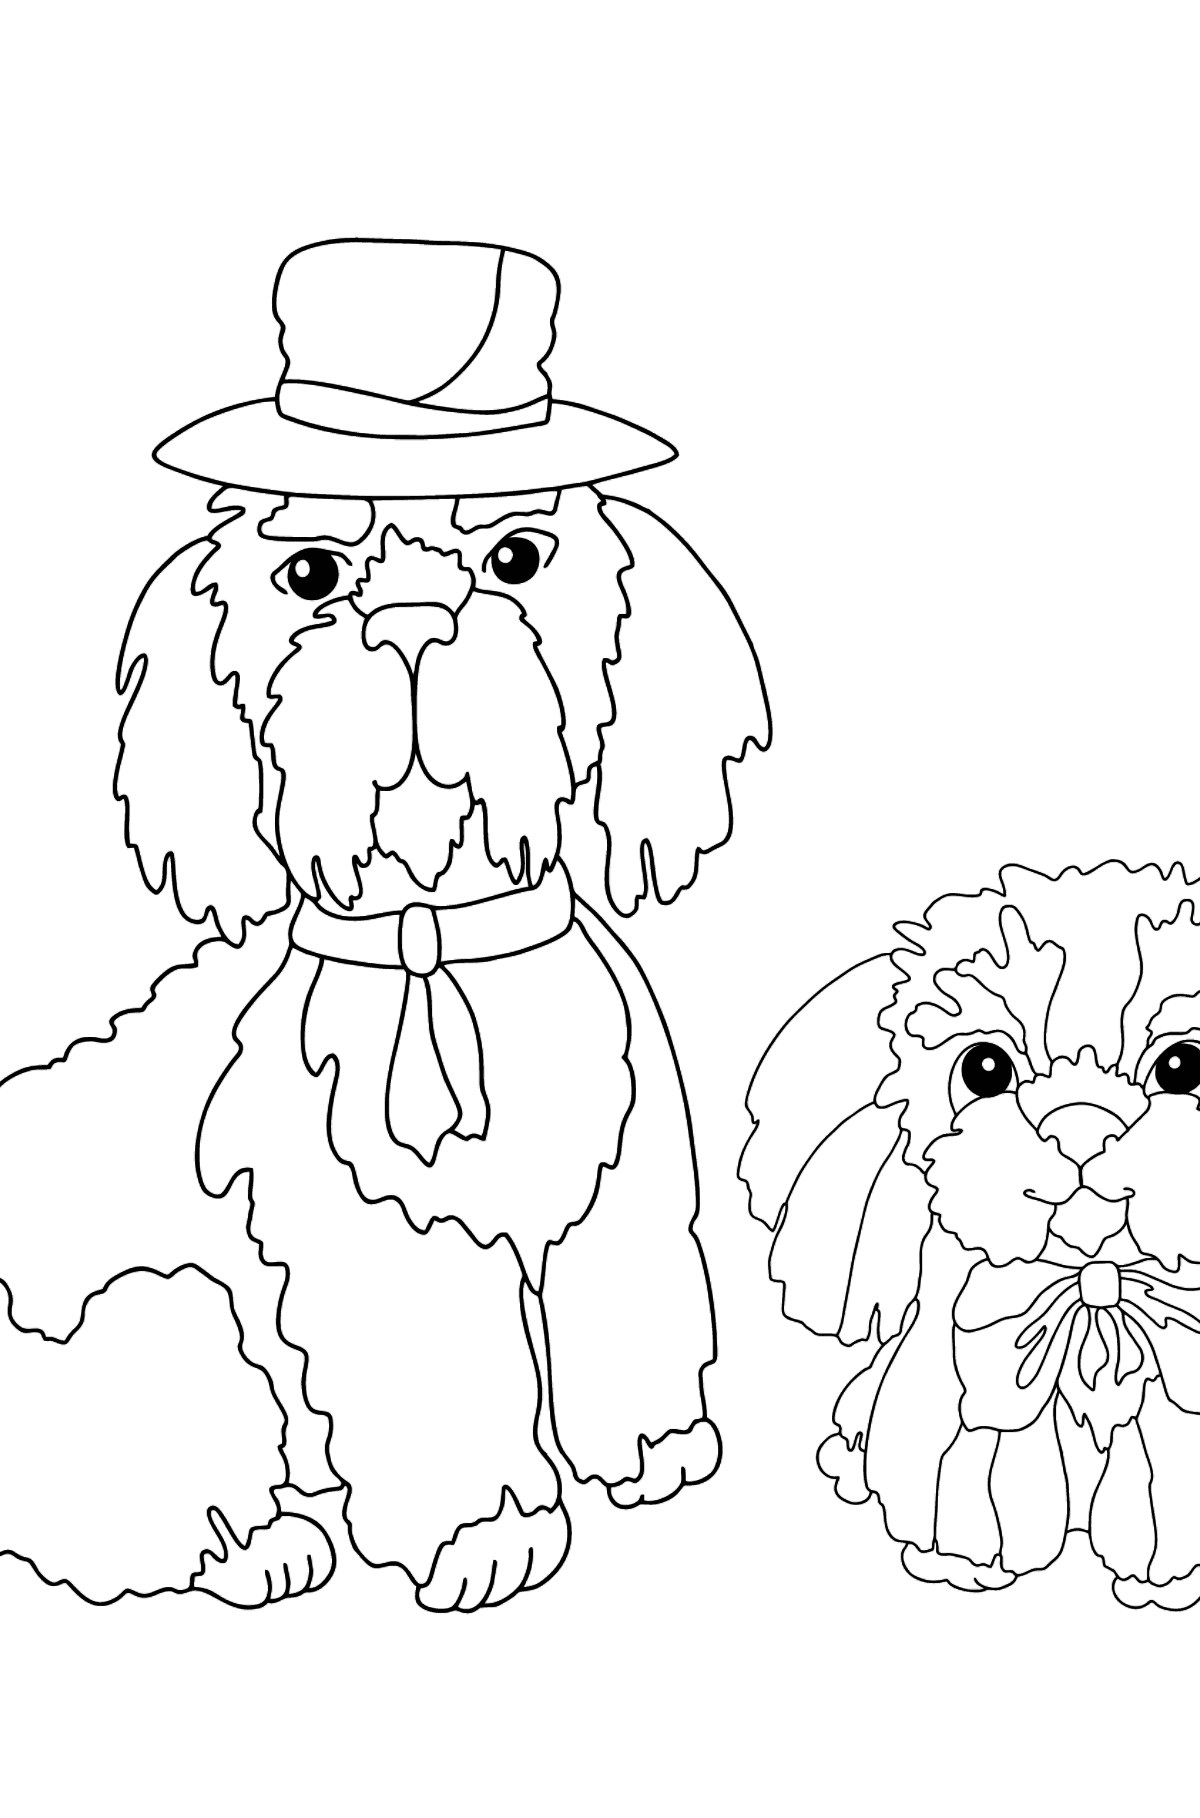 Dibujo para Colorear - Los Perros con Sombreros están Sentados - Dibujos para Colorear para Niños